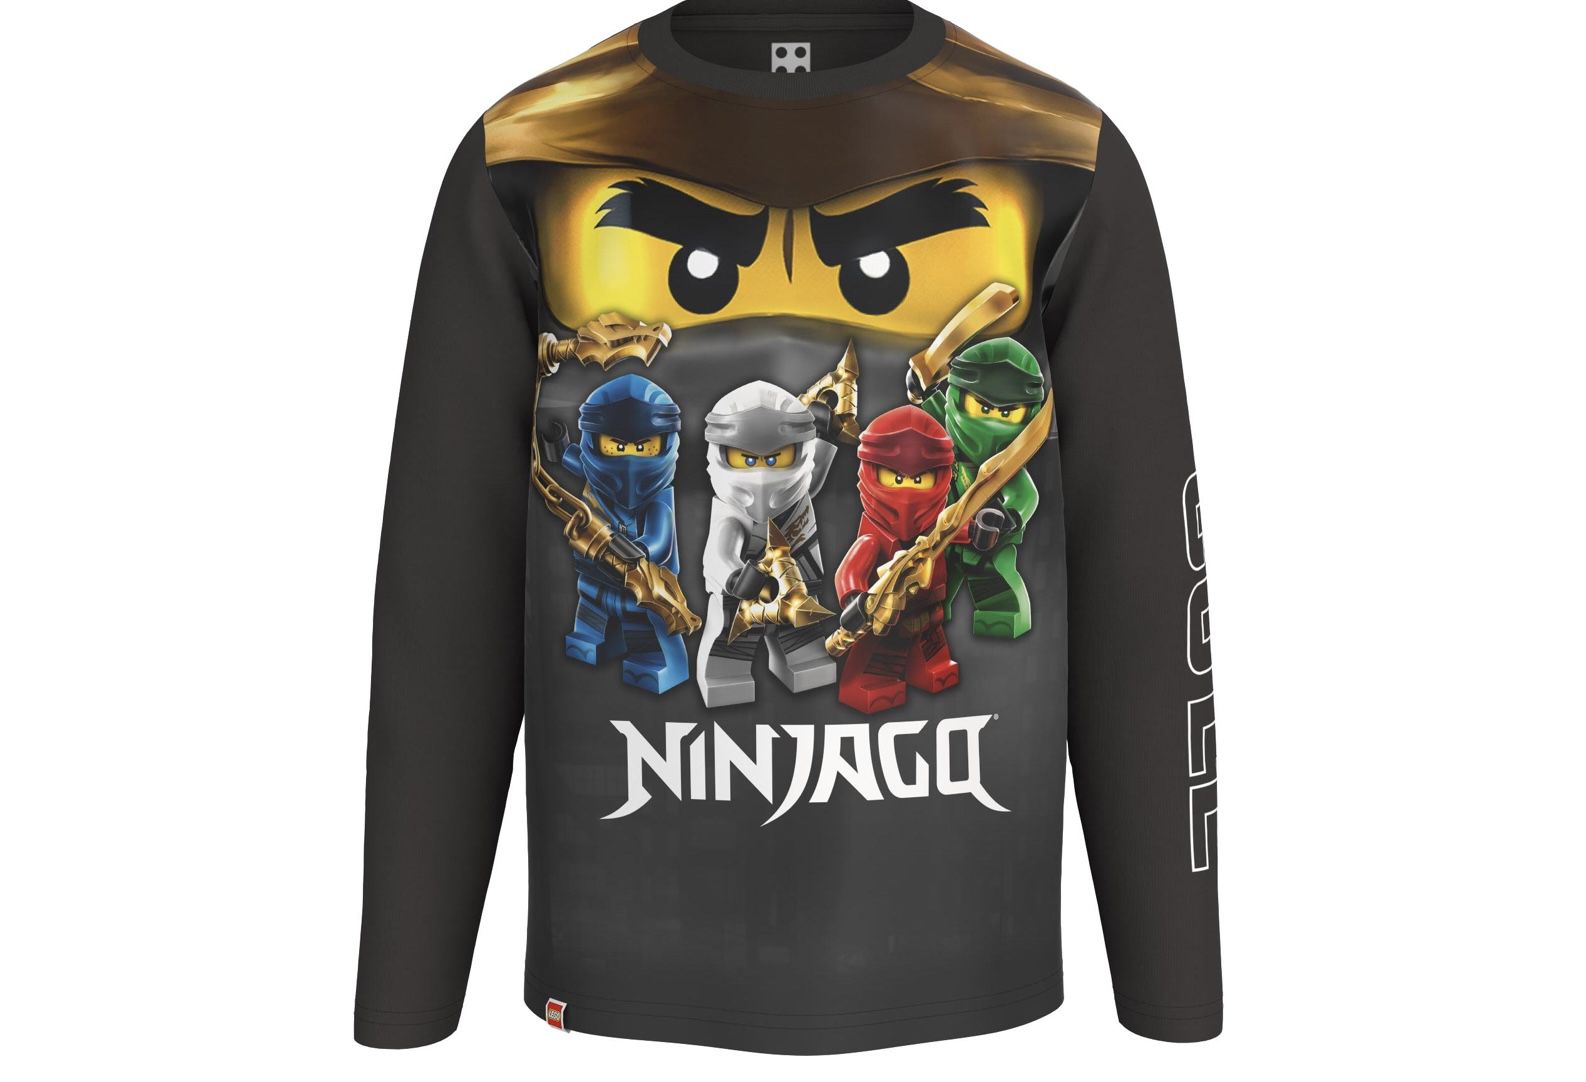 LEGO Ninjago Kinder Langarmshirt für 15,99€ (statt 21€)   Prime